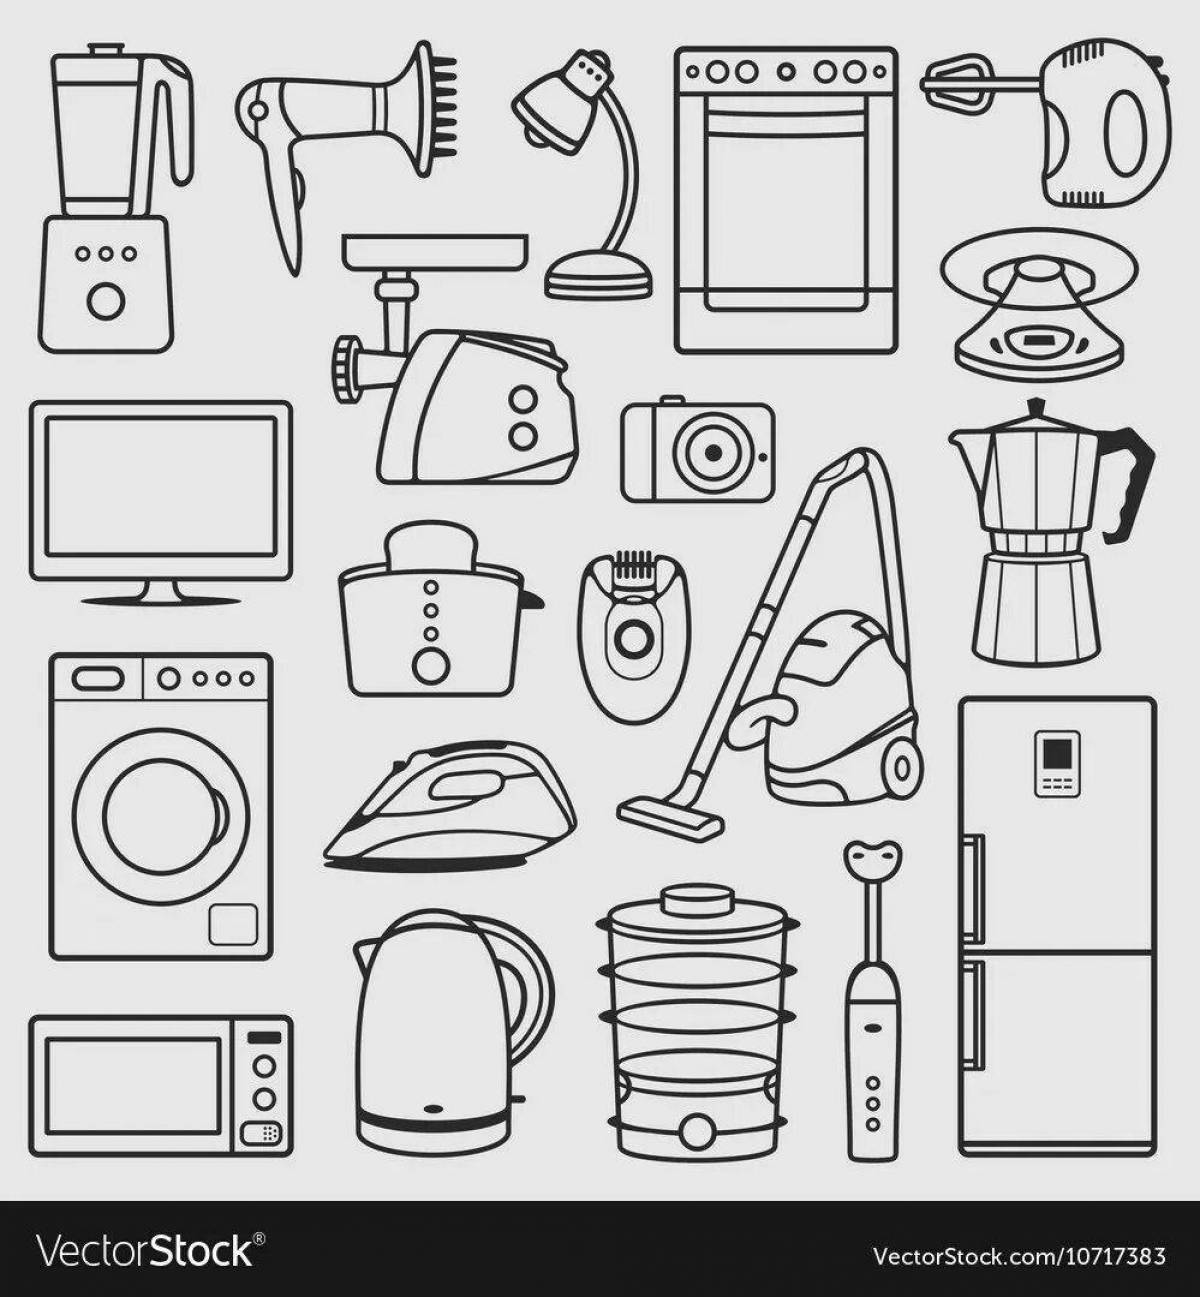 Children's appliances #11